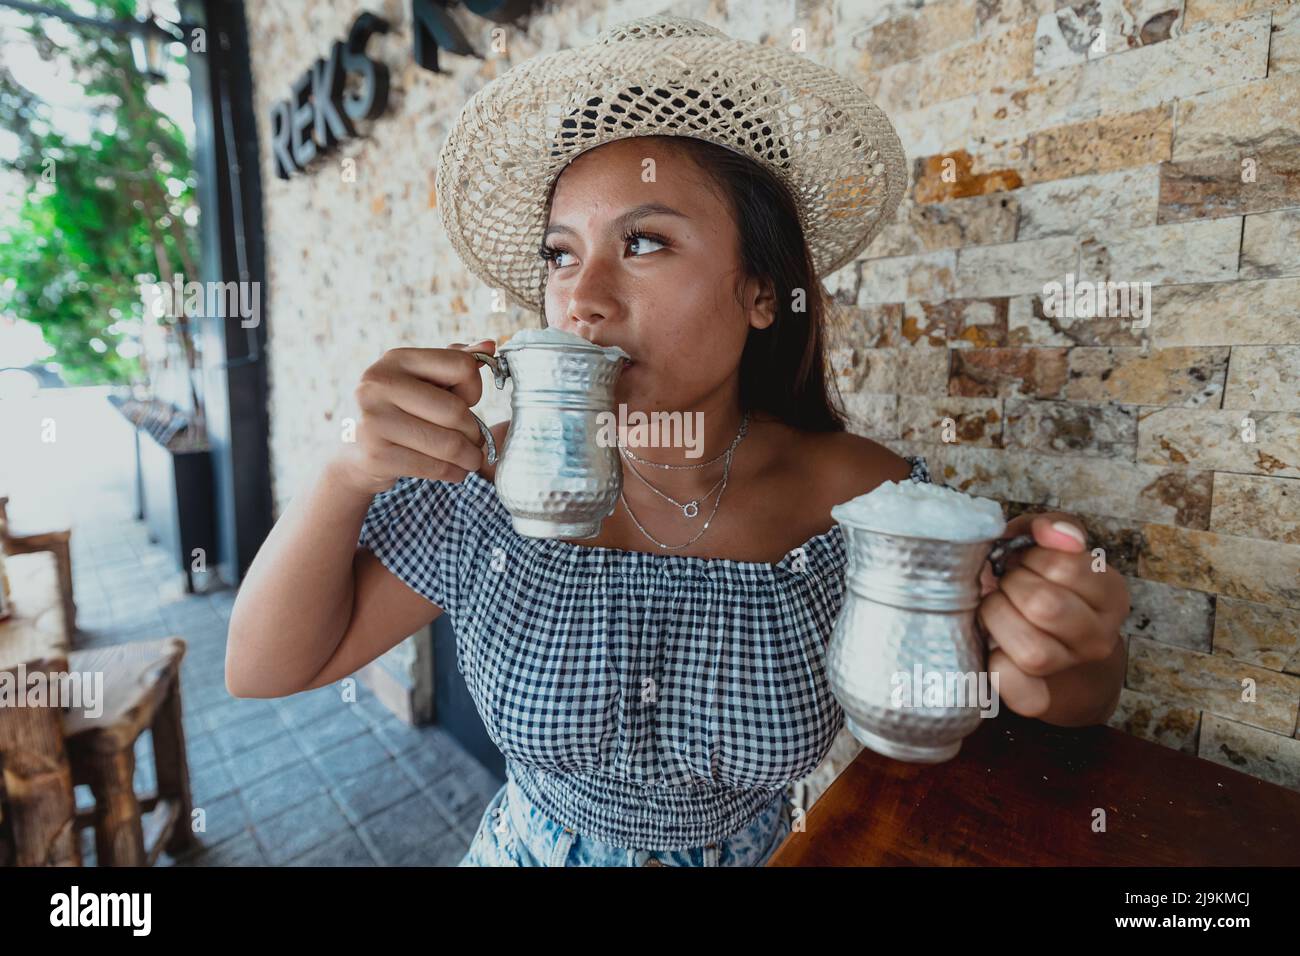 une jeune fille indonésienne buvant de l'ayran dans une tasse d'argent portant un chapeau pendant l'été Banque D'Images